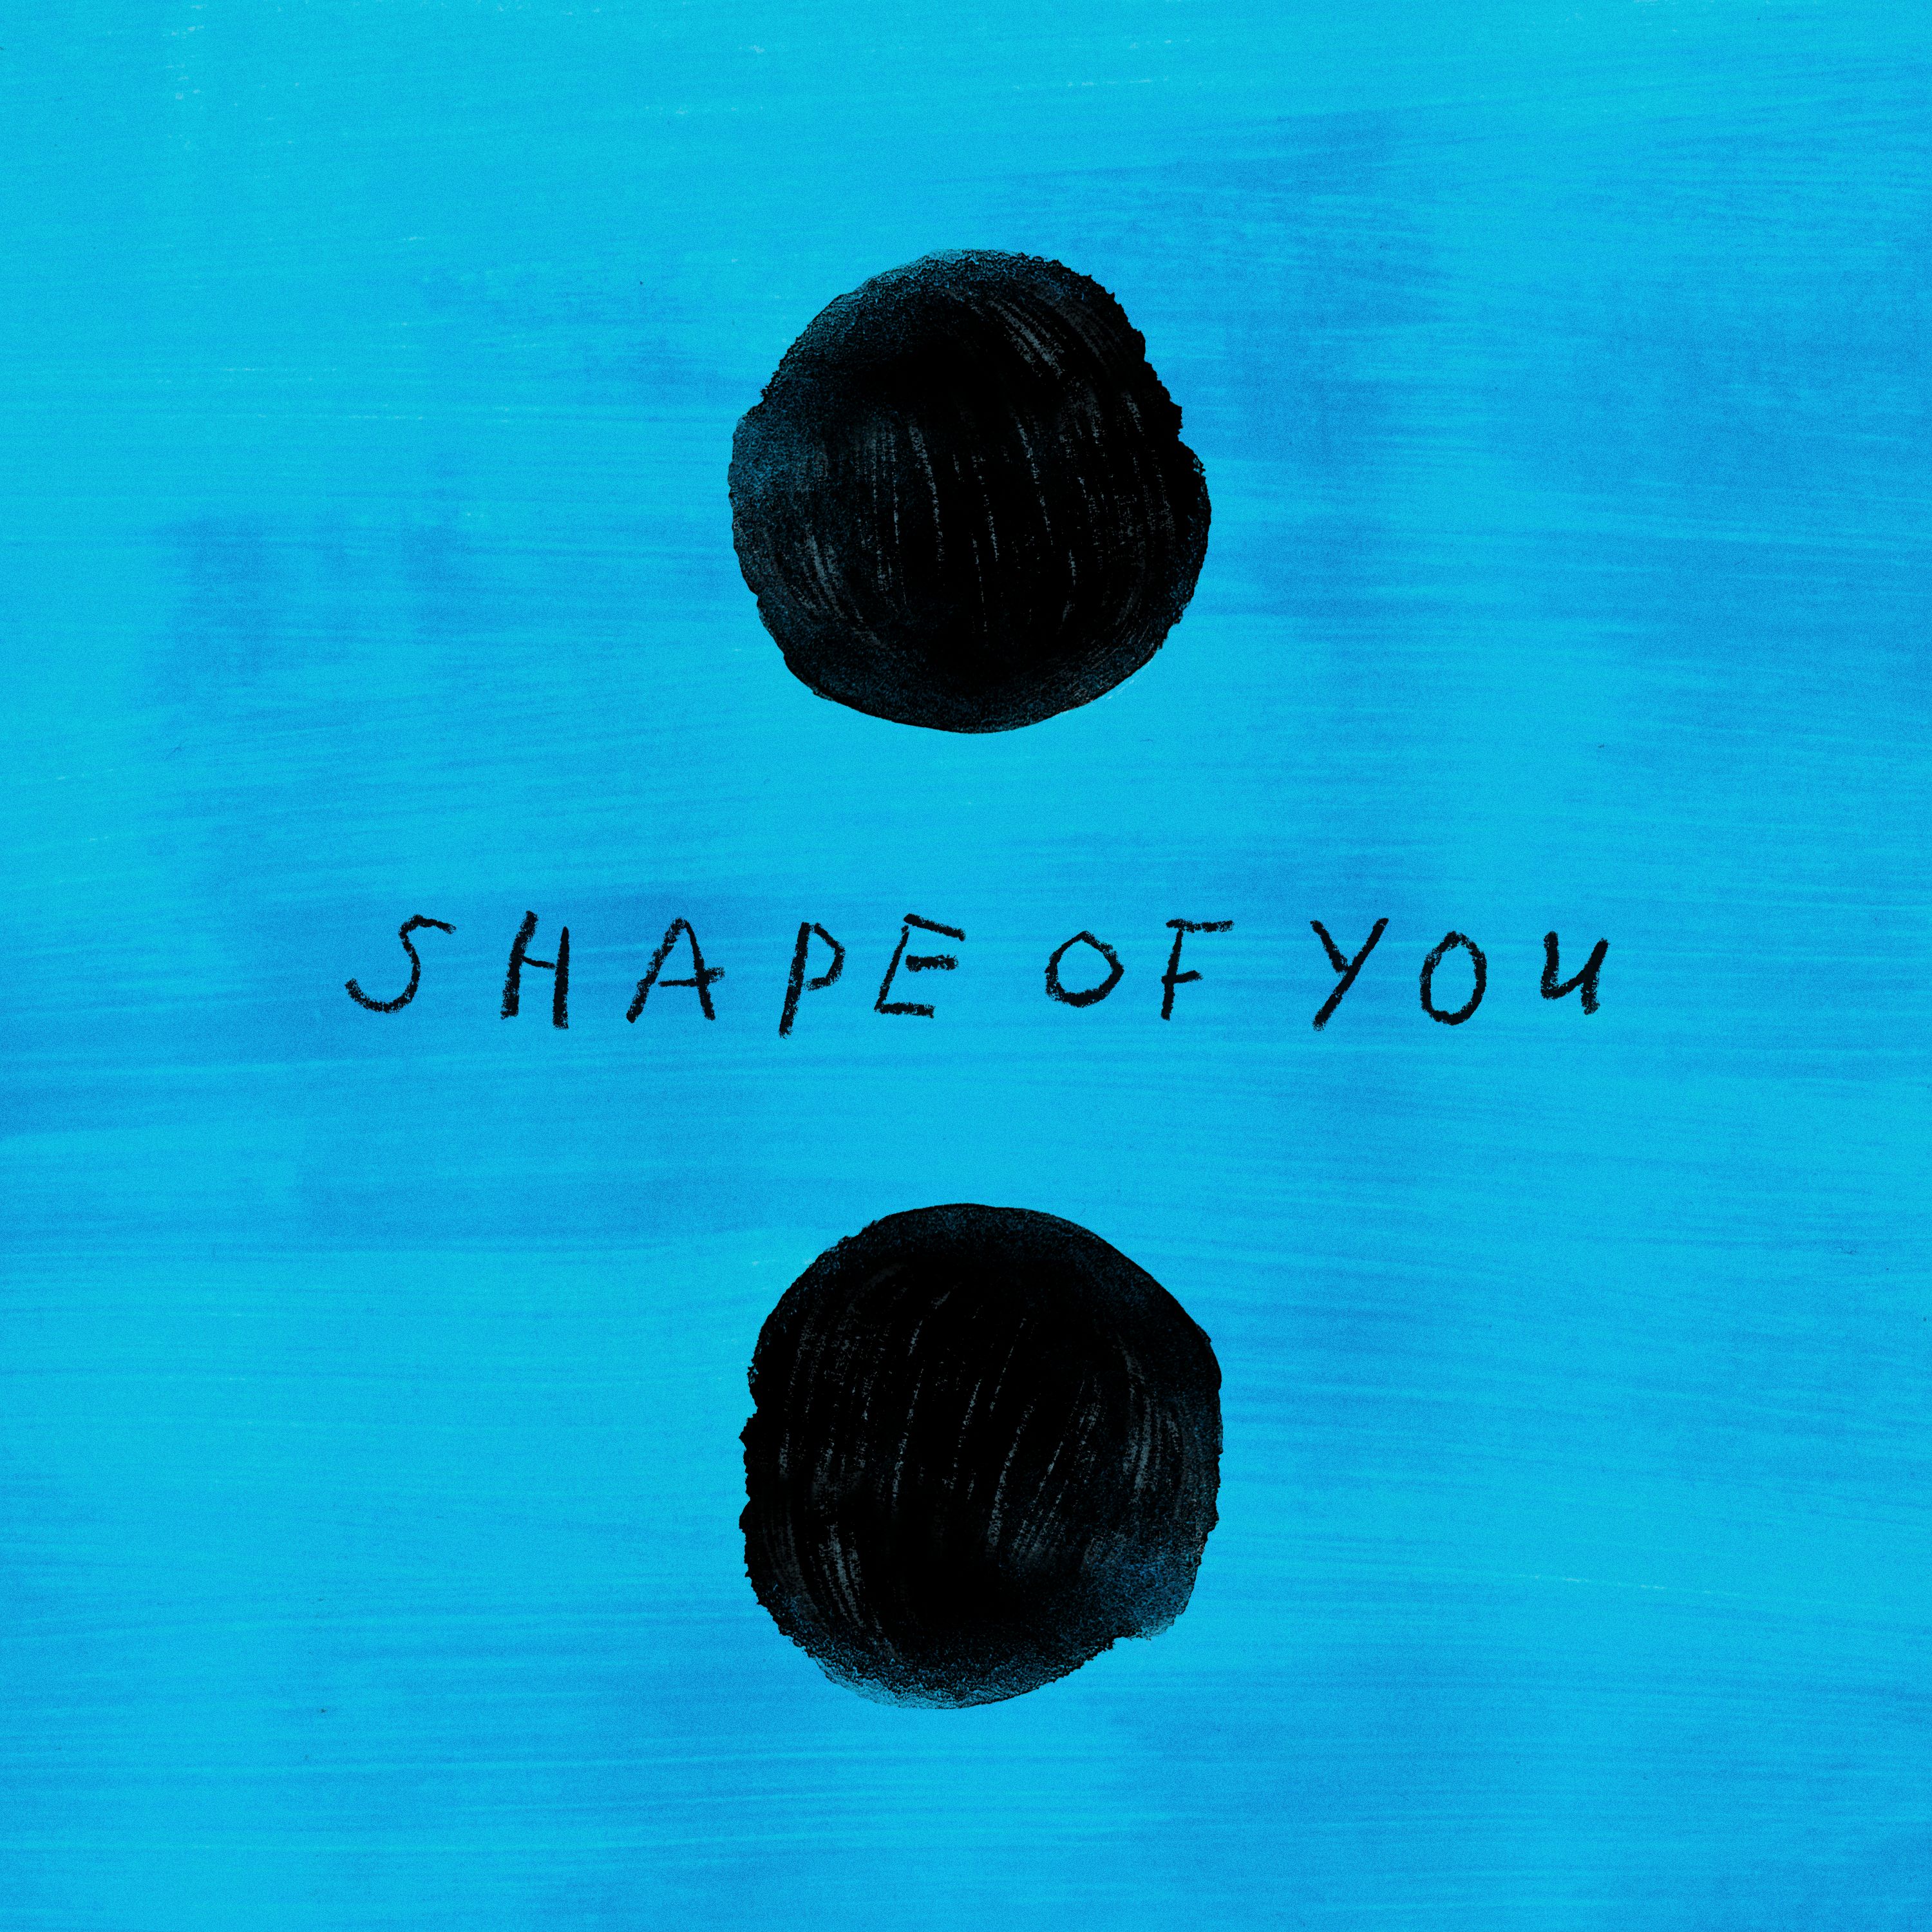 Download Ed Sheeran - Shape of You